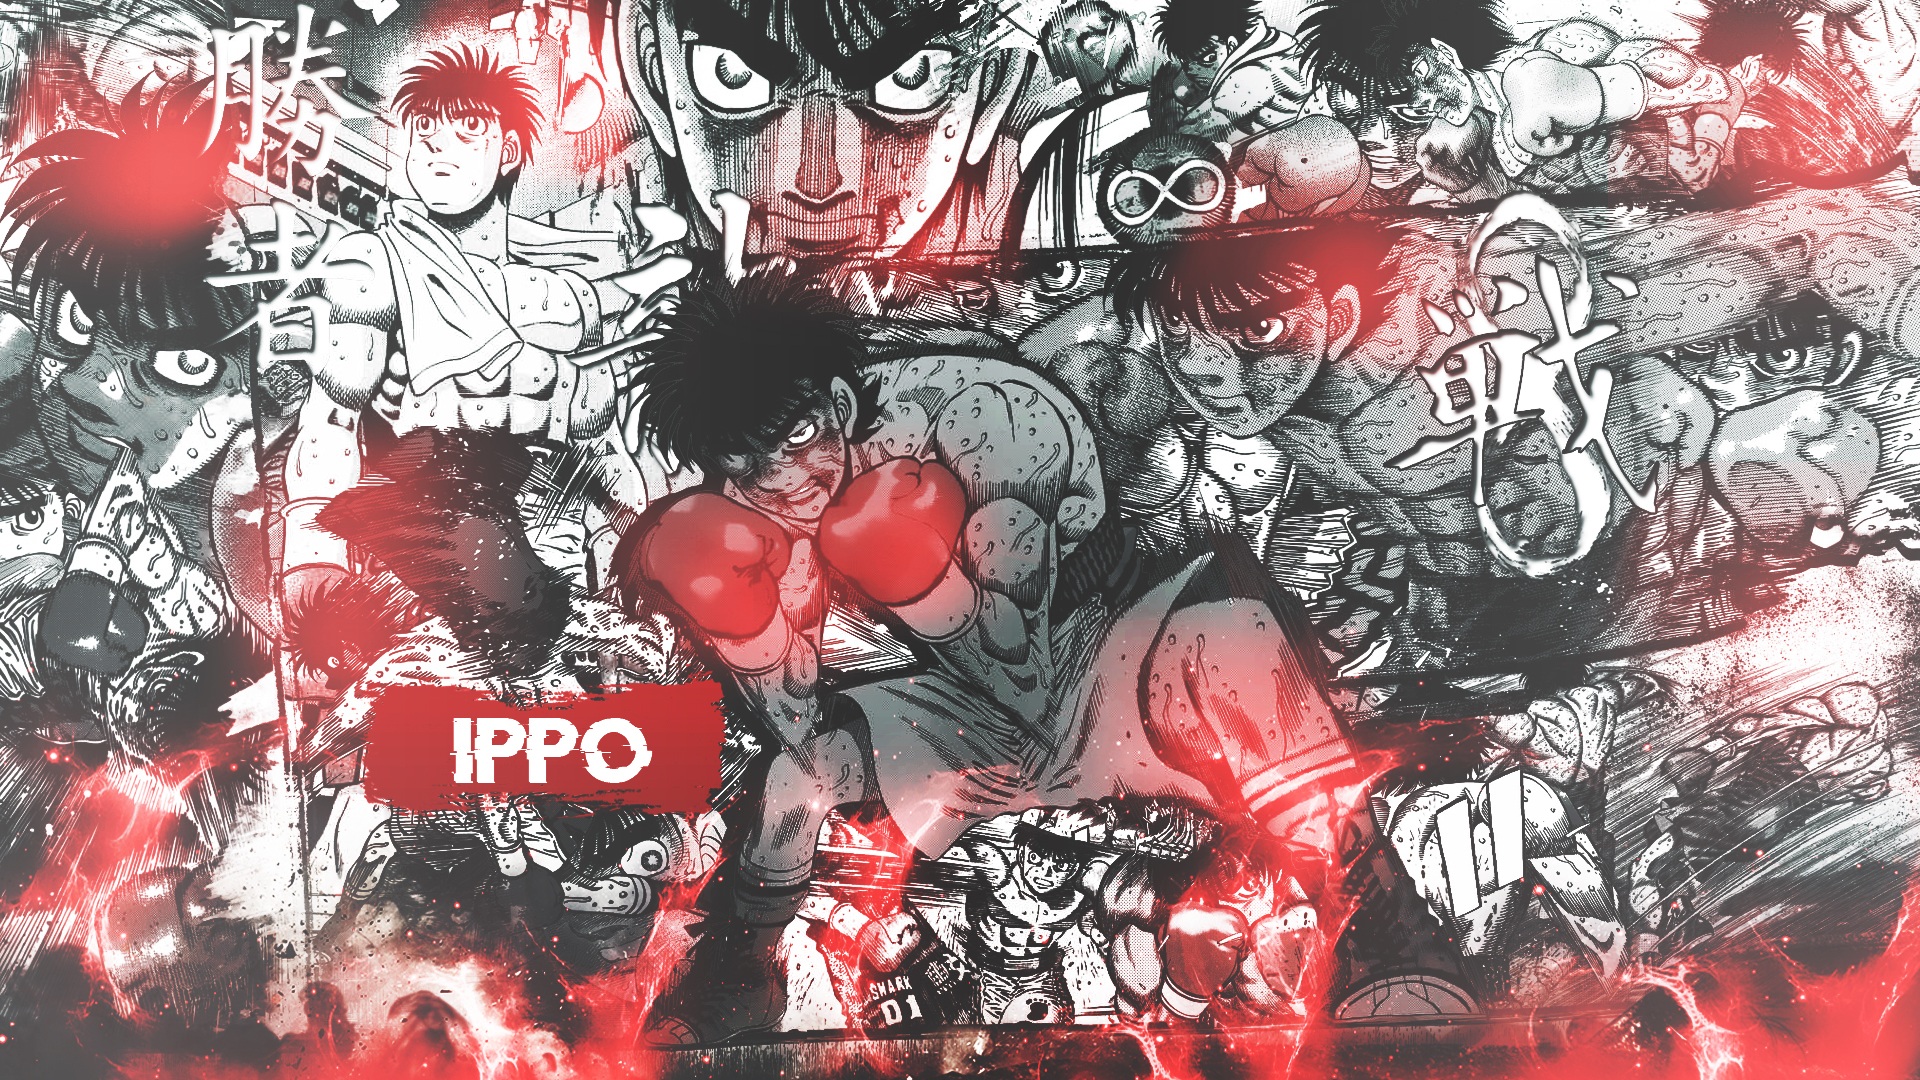 Hajime no ippo wallpaper by Risso15 - Download on ZEDGE™